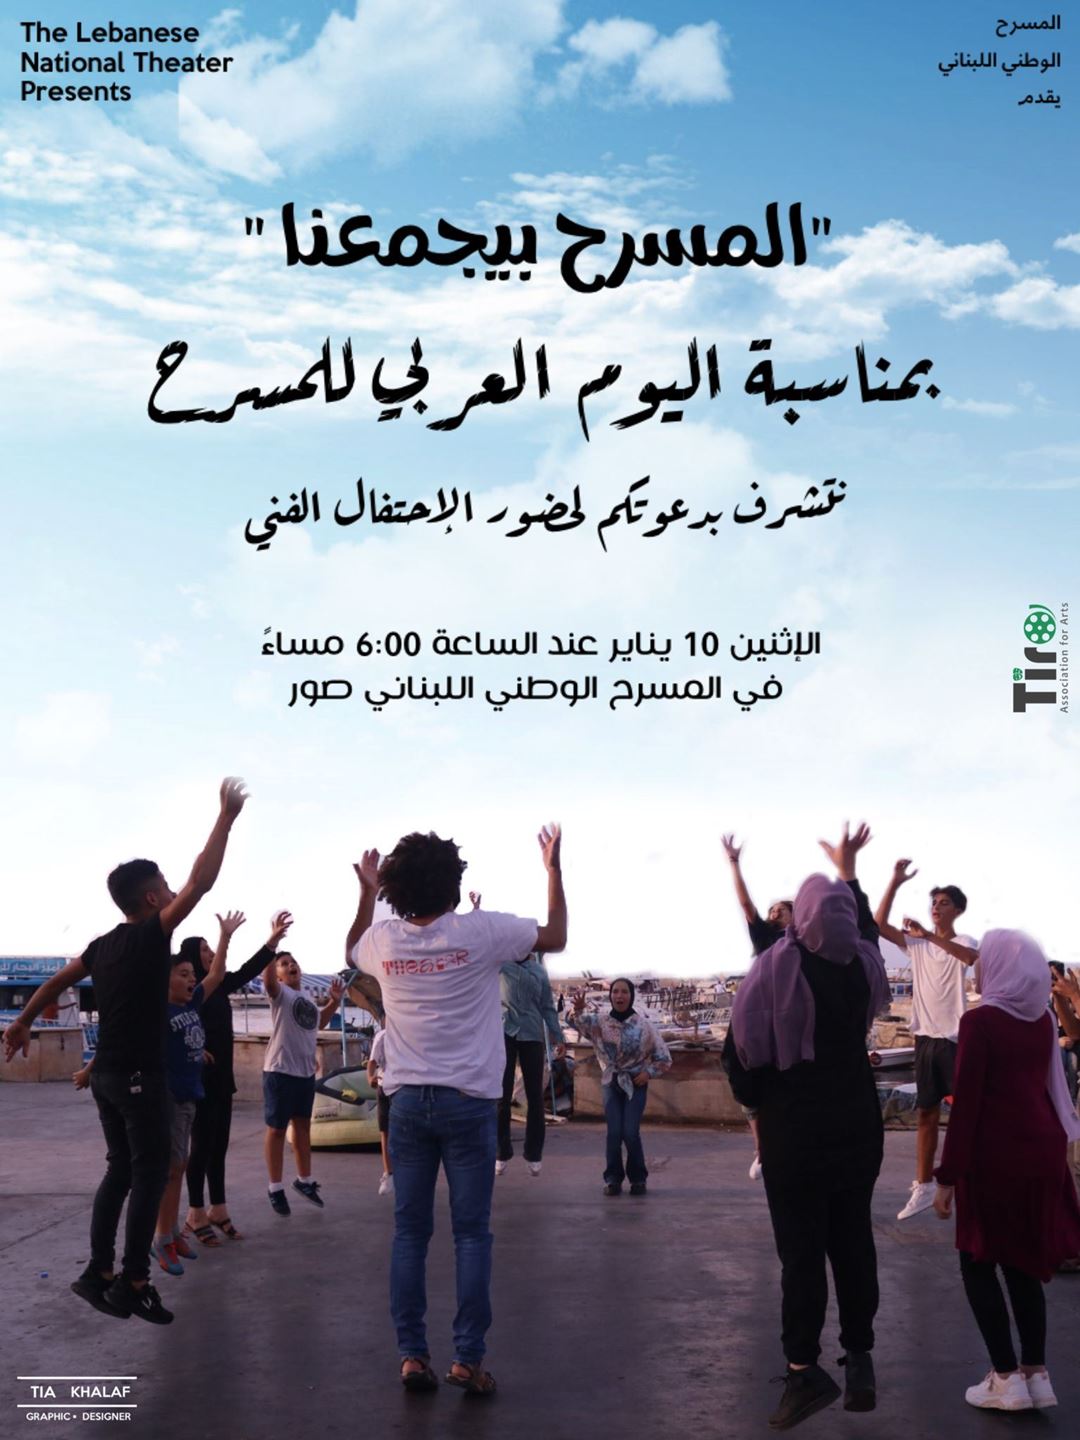 المسرح الوطني اللبناني يحتفي باليوم العربي للمسرح